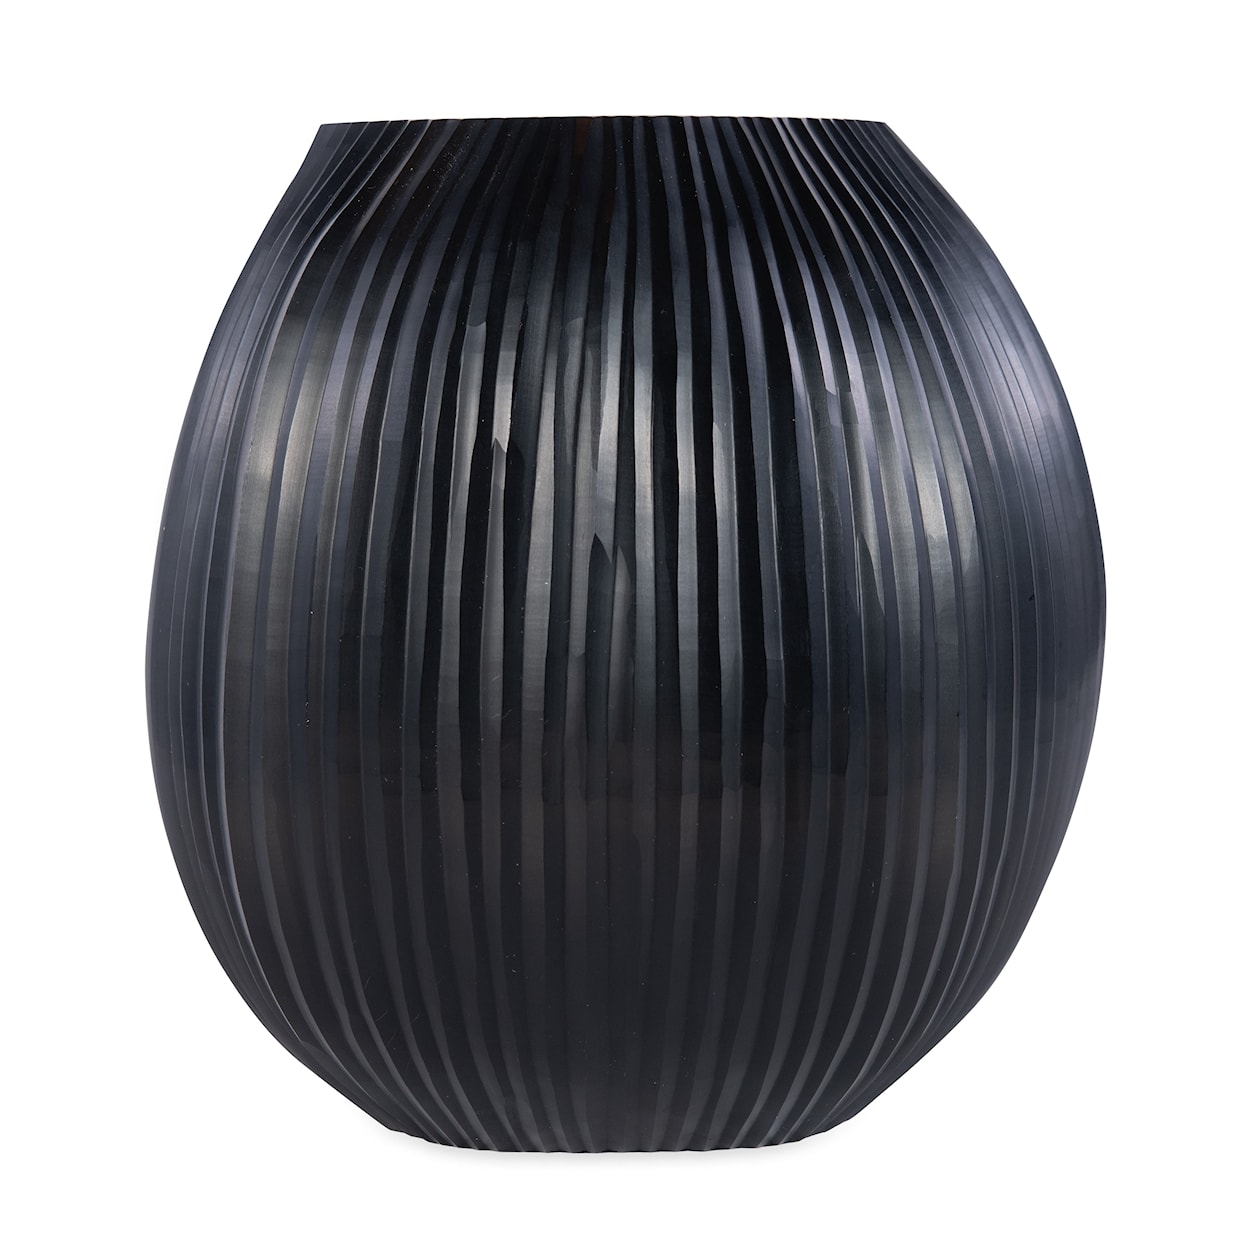 BOBO Intriguing Objects BOBO Intriguing Objects Seine Black Sculptural Glass Vase - Medium